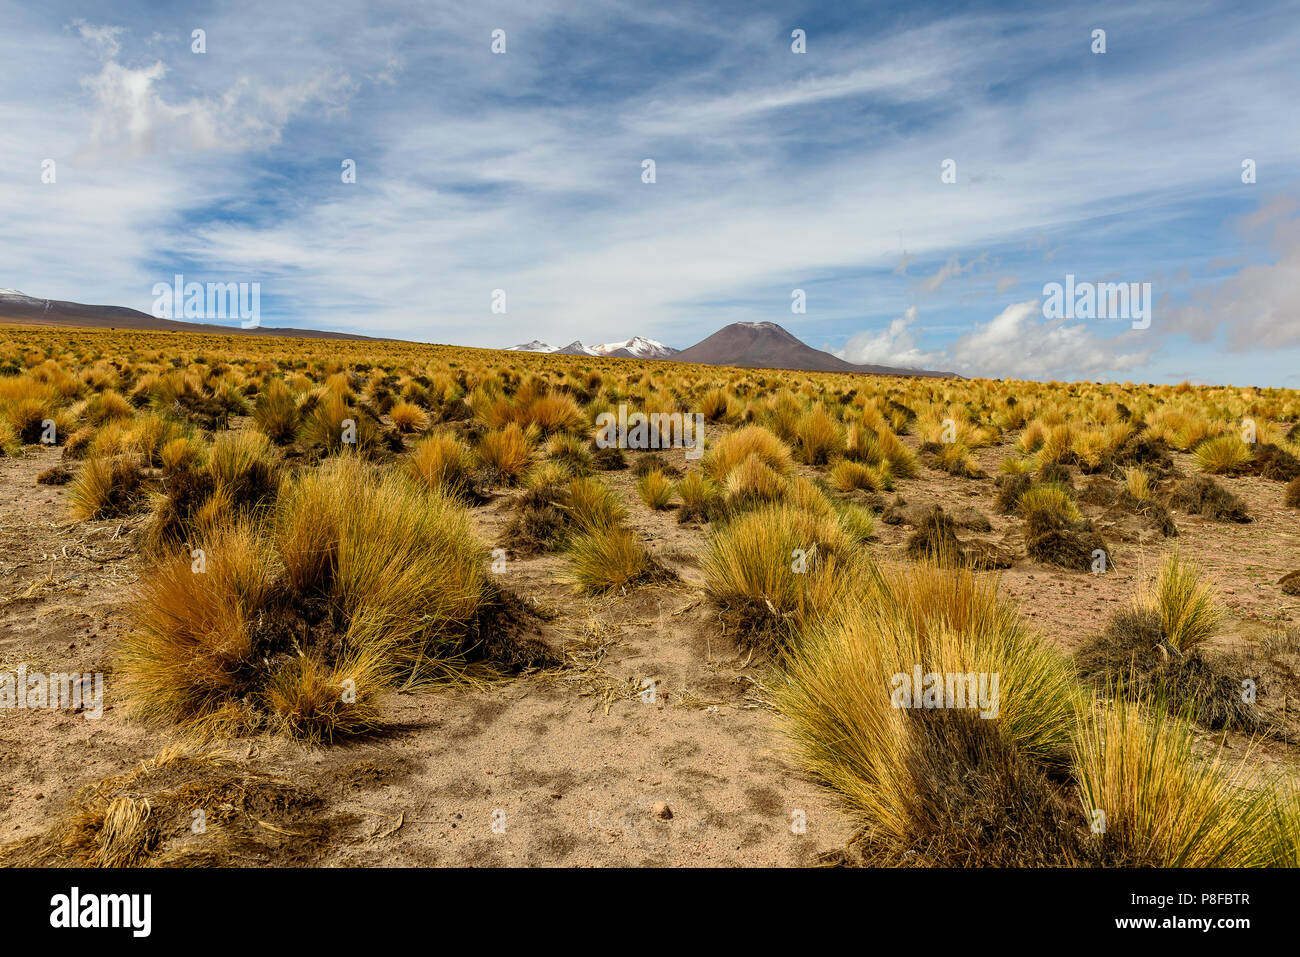 Mountain landscape, San Pedro de Atacama, Antofagasta, Chile Stock Photo